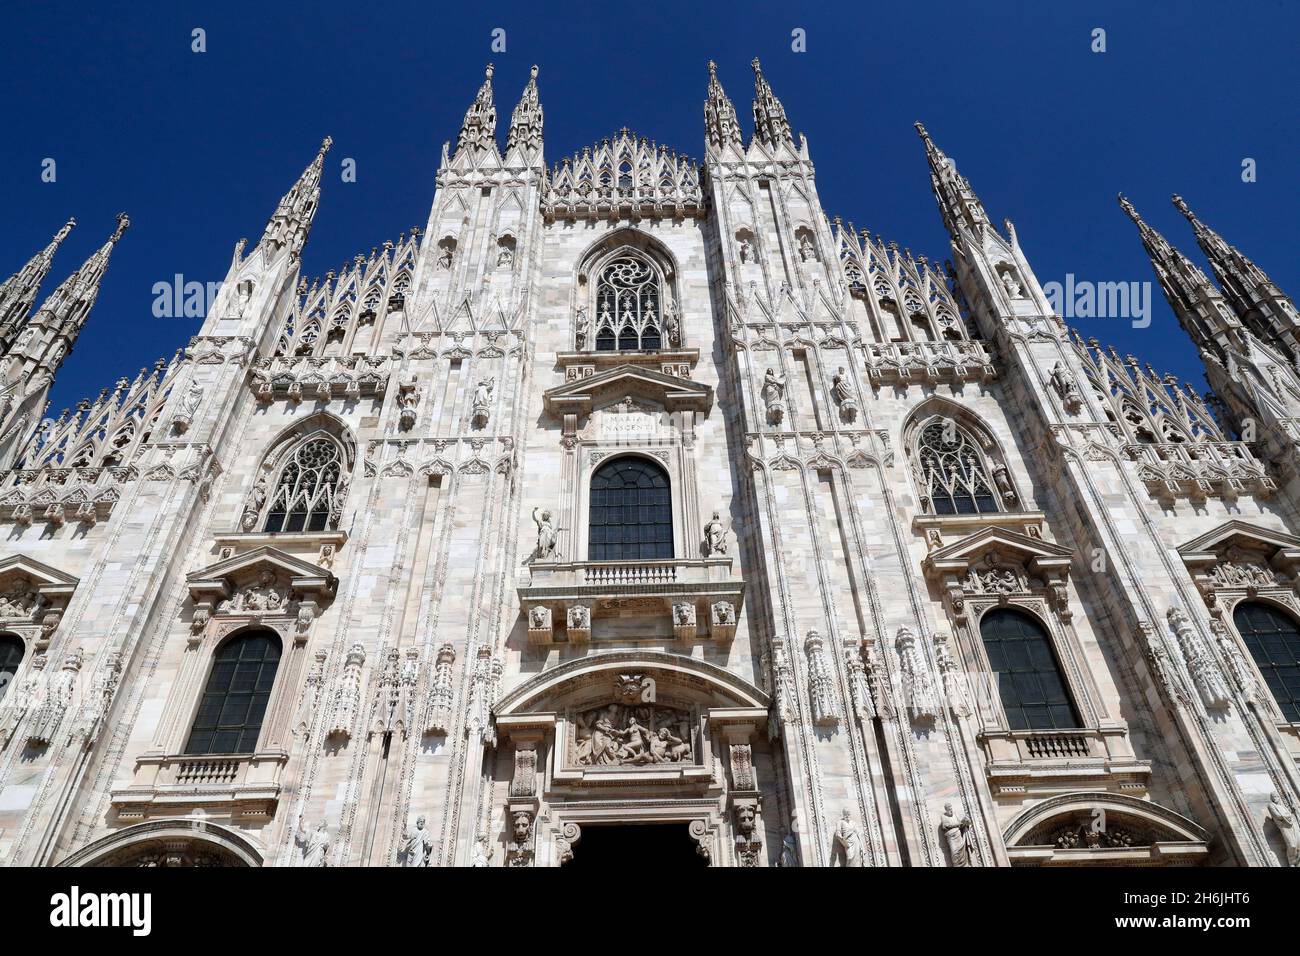 Die Westfassade des Doms, die Kathedrale im gotischen Stil, die der Hl. Maria, Mailand, der Lombardei, Italien, Europa gewidmet ist Stockfoto